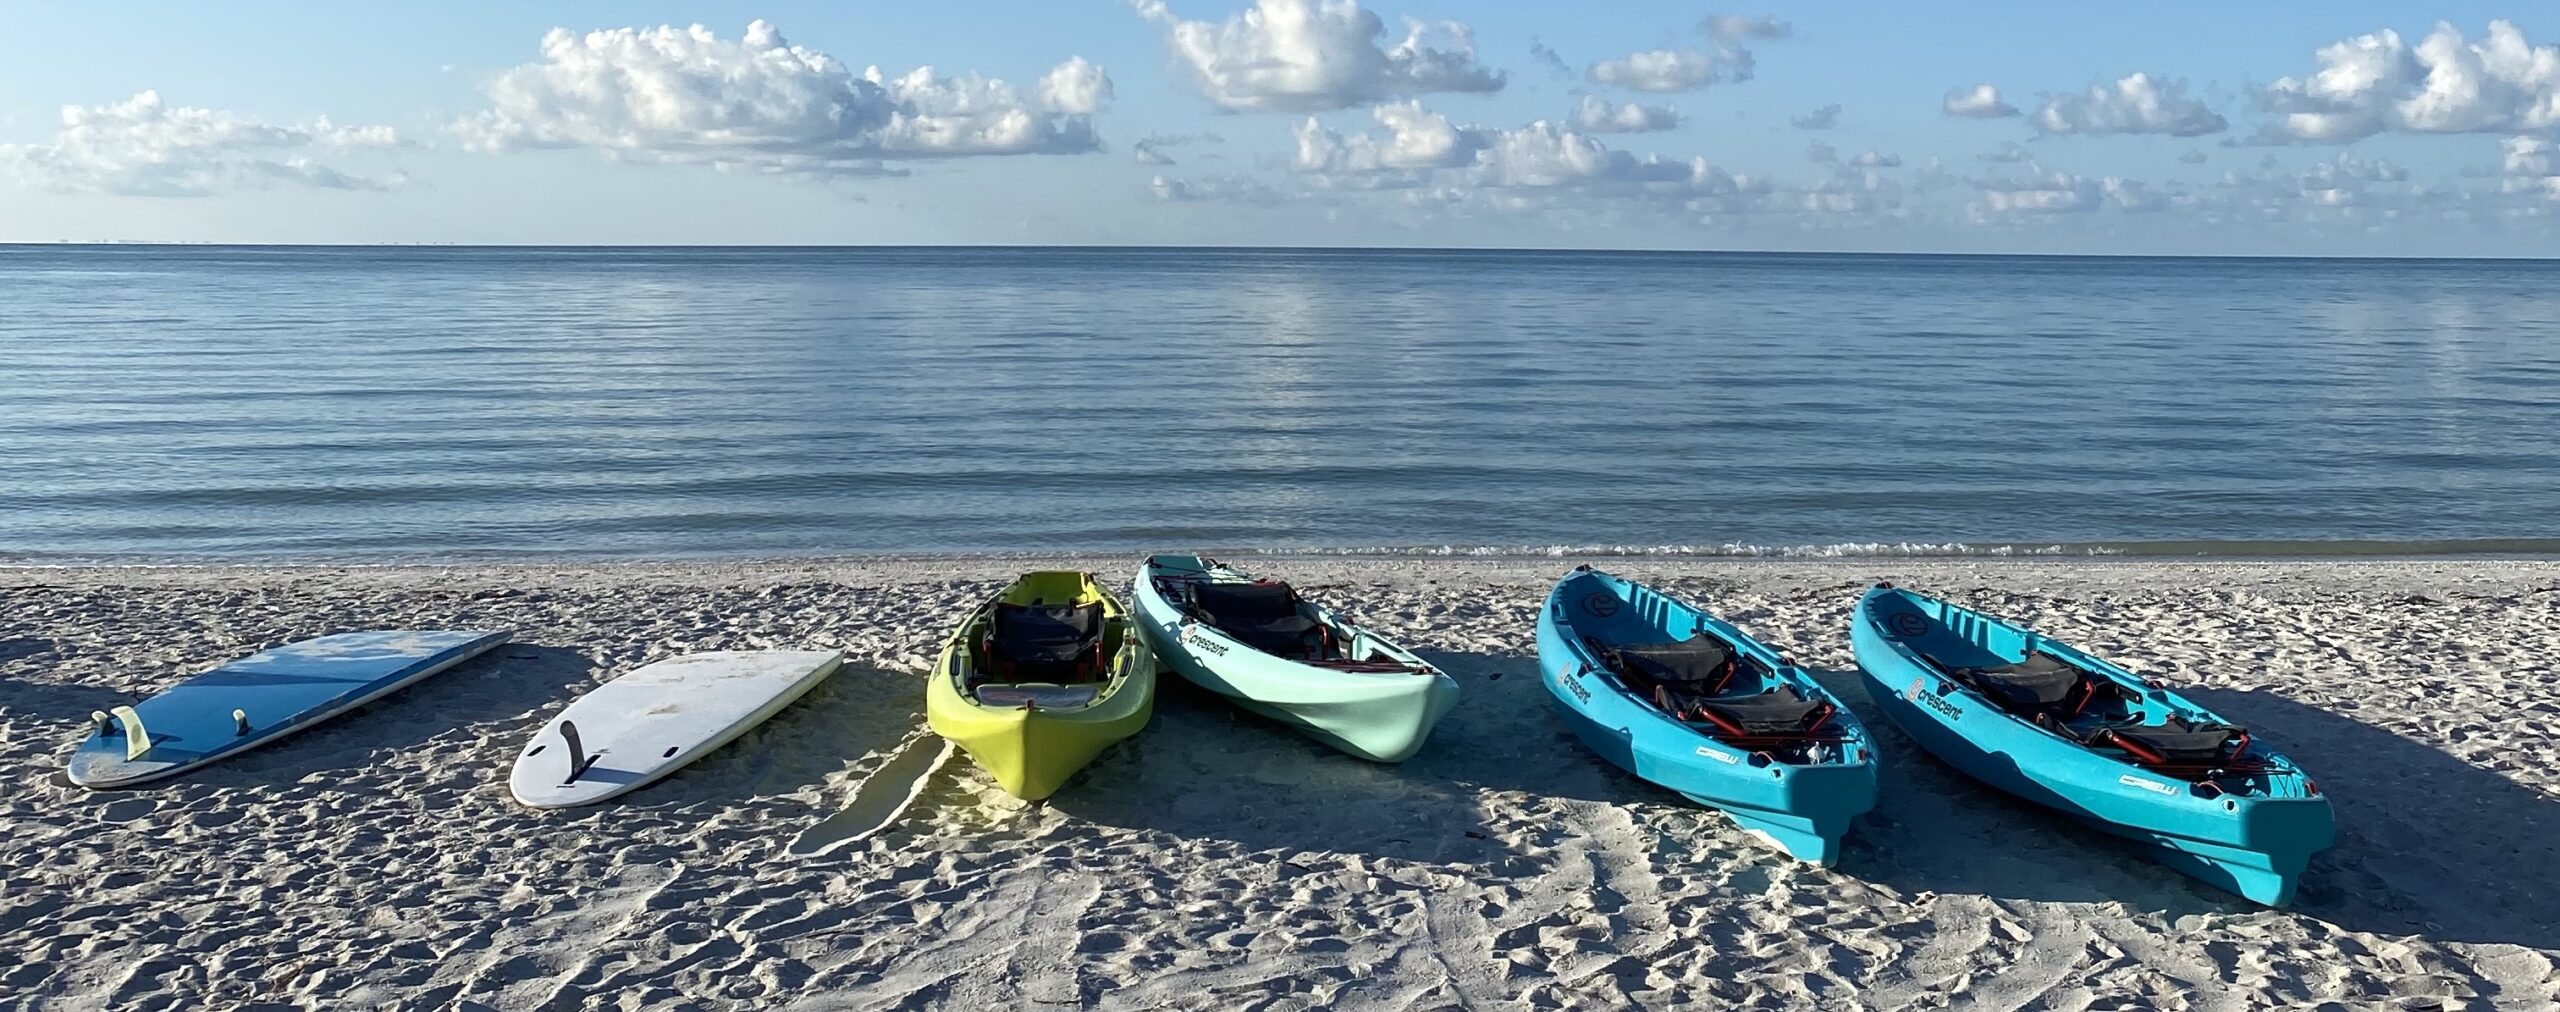 kayakas paddleboards on beach suundial sanibel gulf of mexico